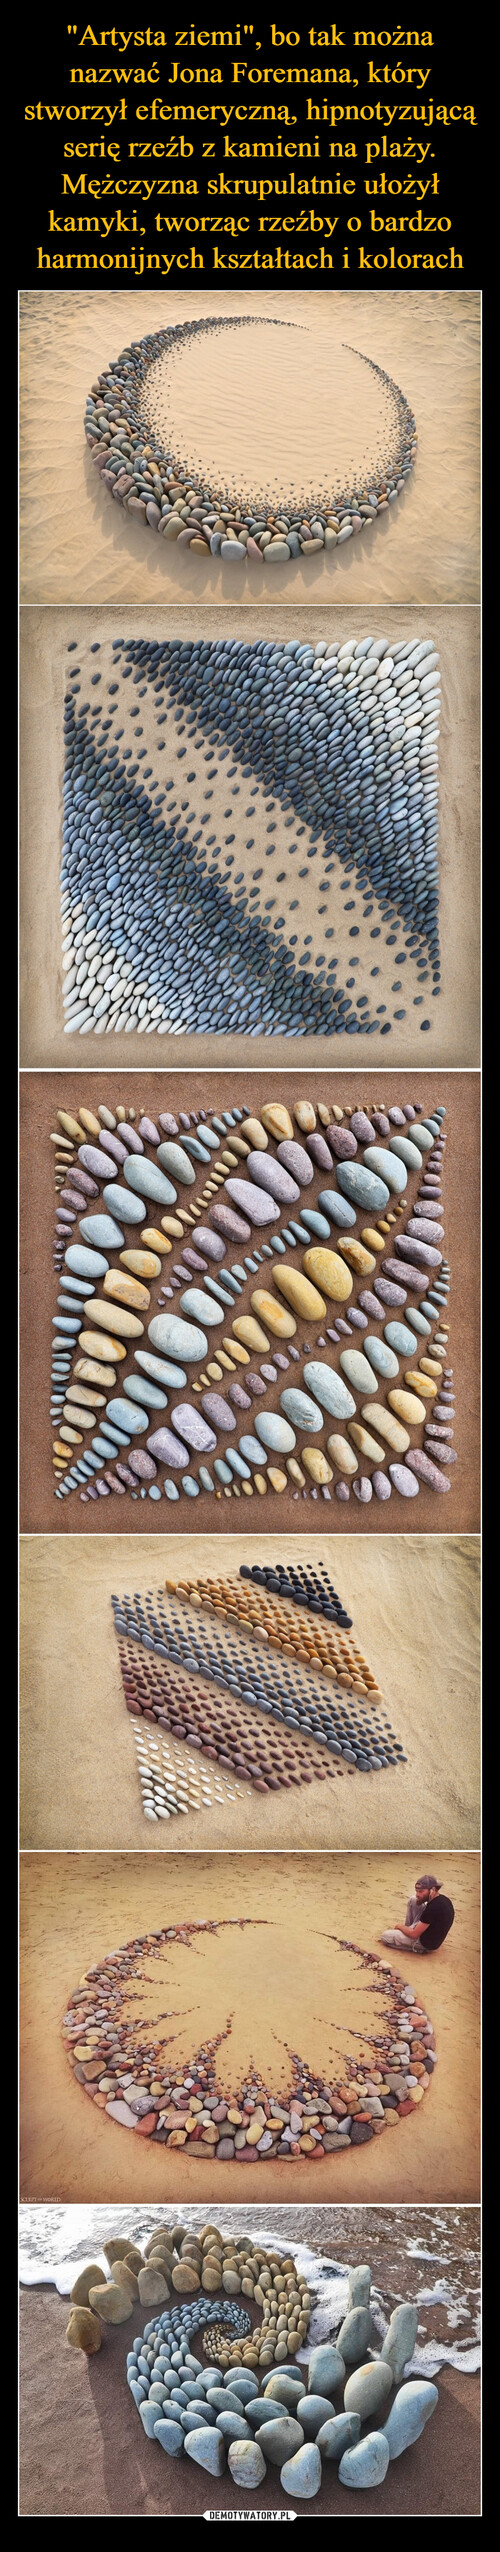 "Artysta ziemi", bo tak można nazwać Jona Foremana, który stworzył efemeryczną, hipnotyzującą serię rzeźb z kamieni na plaży. Mężczyzna skrupulatnie ułożył kamyki, tworząc rzeźby o bardzo harmonijnych kształtach i kolorach